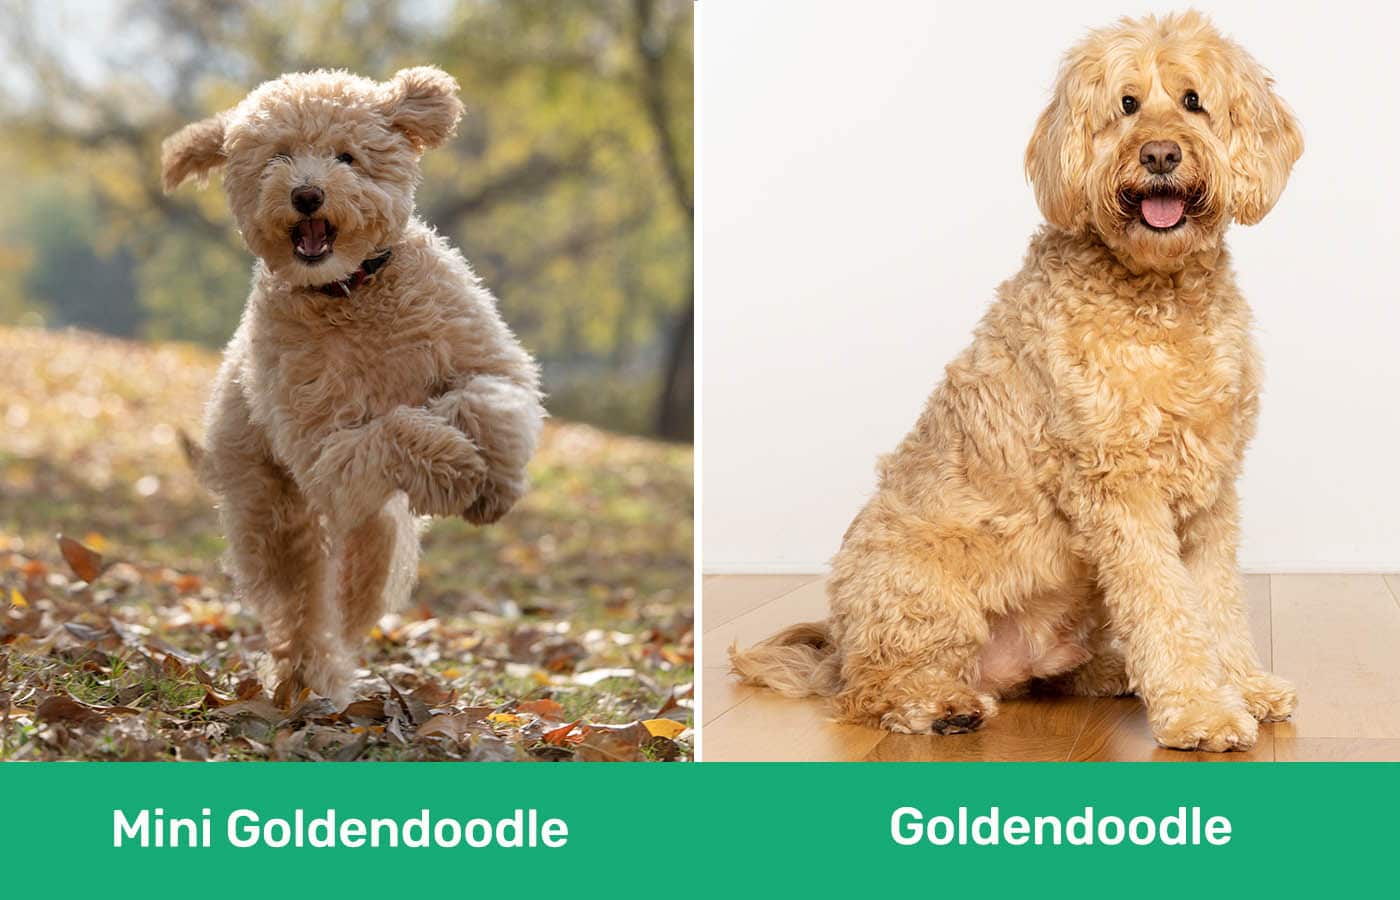 Mini Goldendoodle vs Goldendoodle side by side